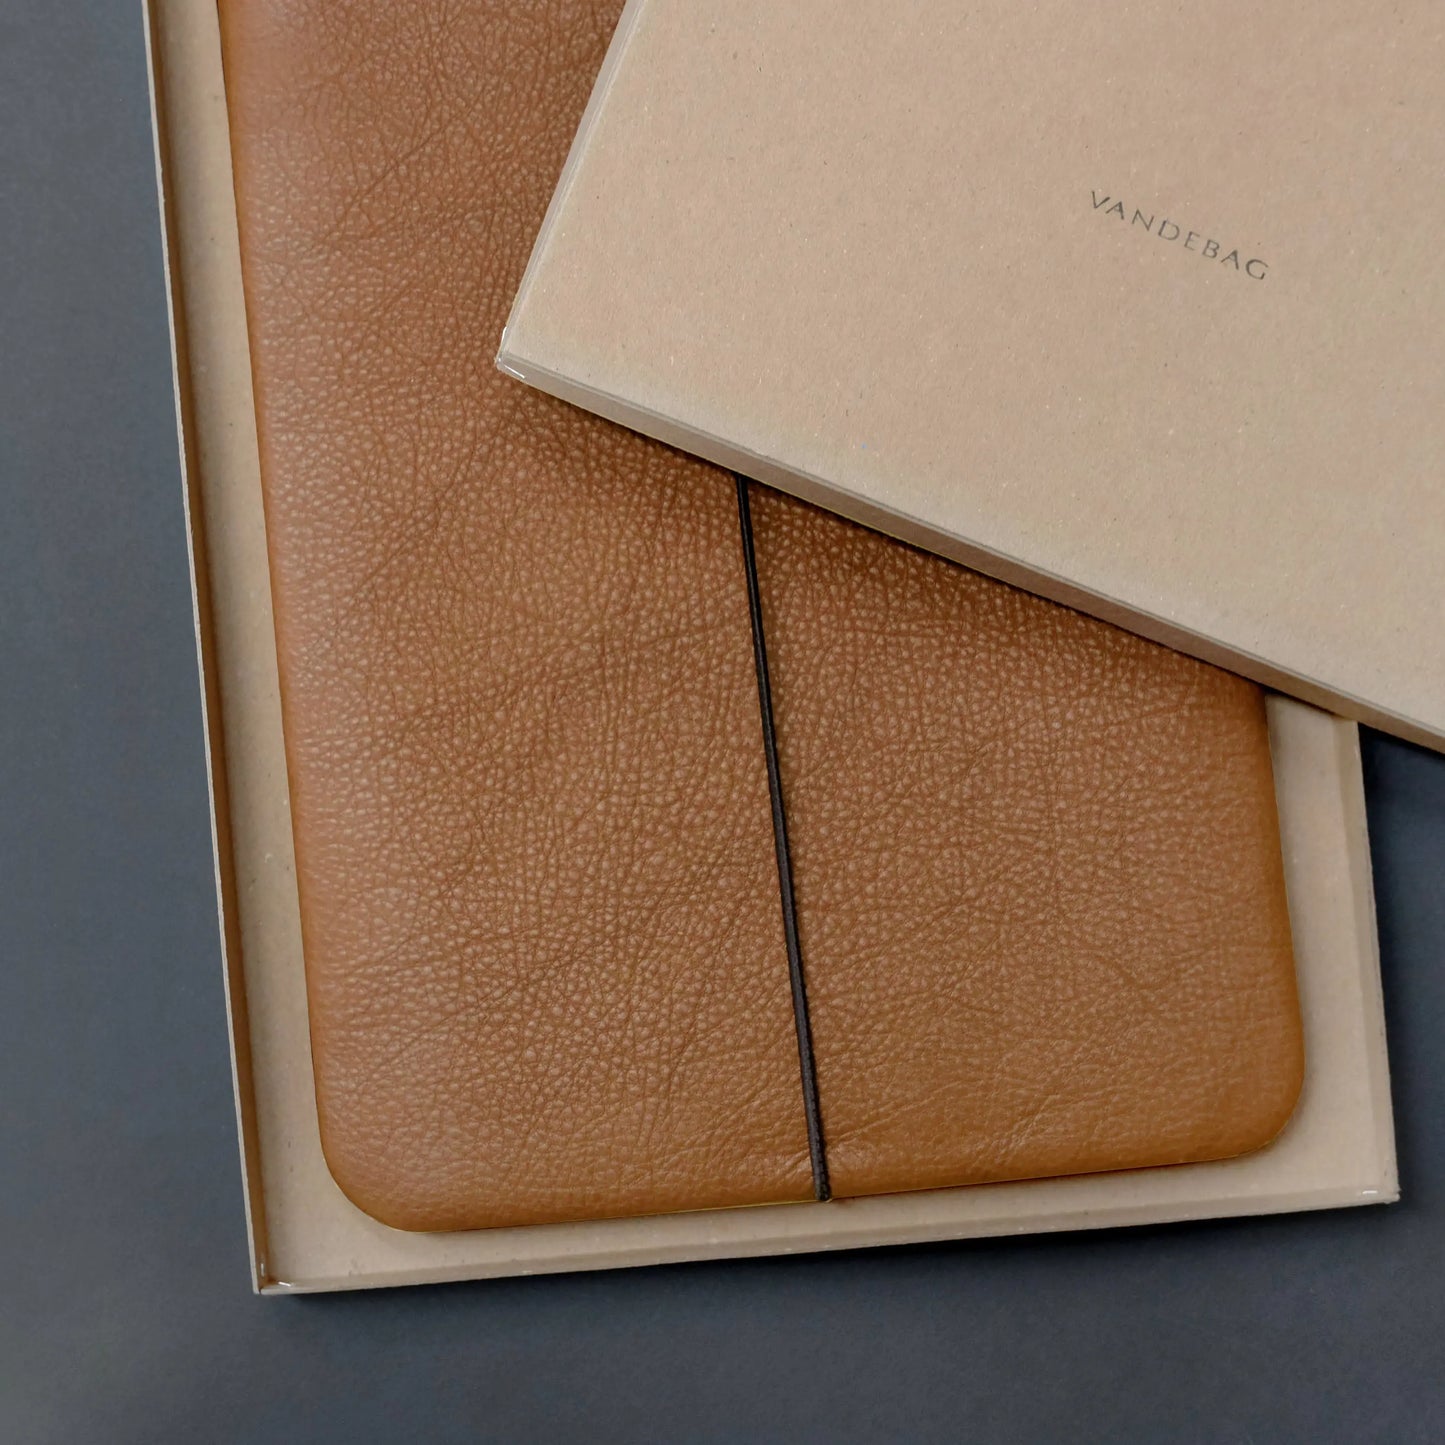 hellbraune Lederhülle für iPads von Vandebag liegt in einer hellbraunen Geschenkverpackung